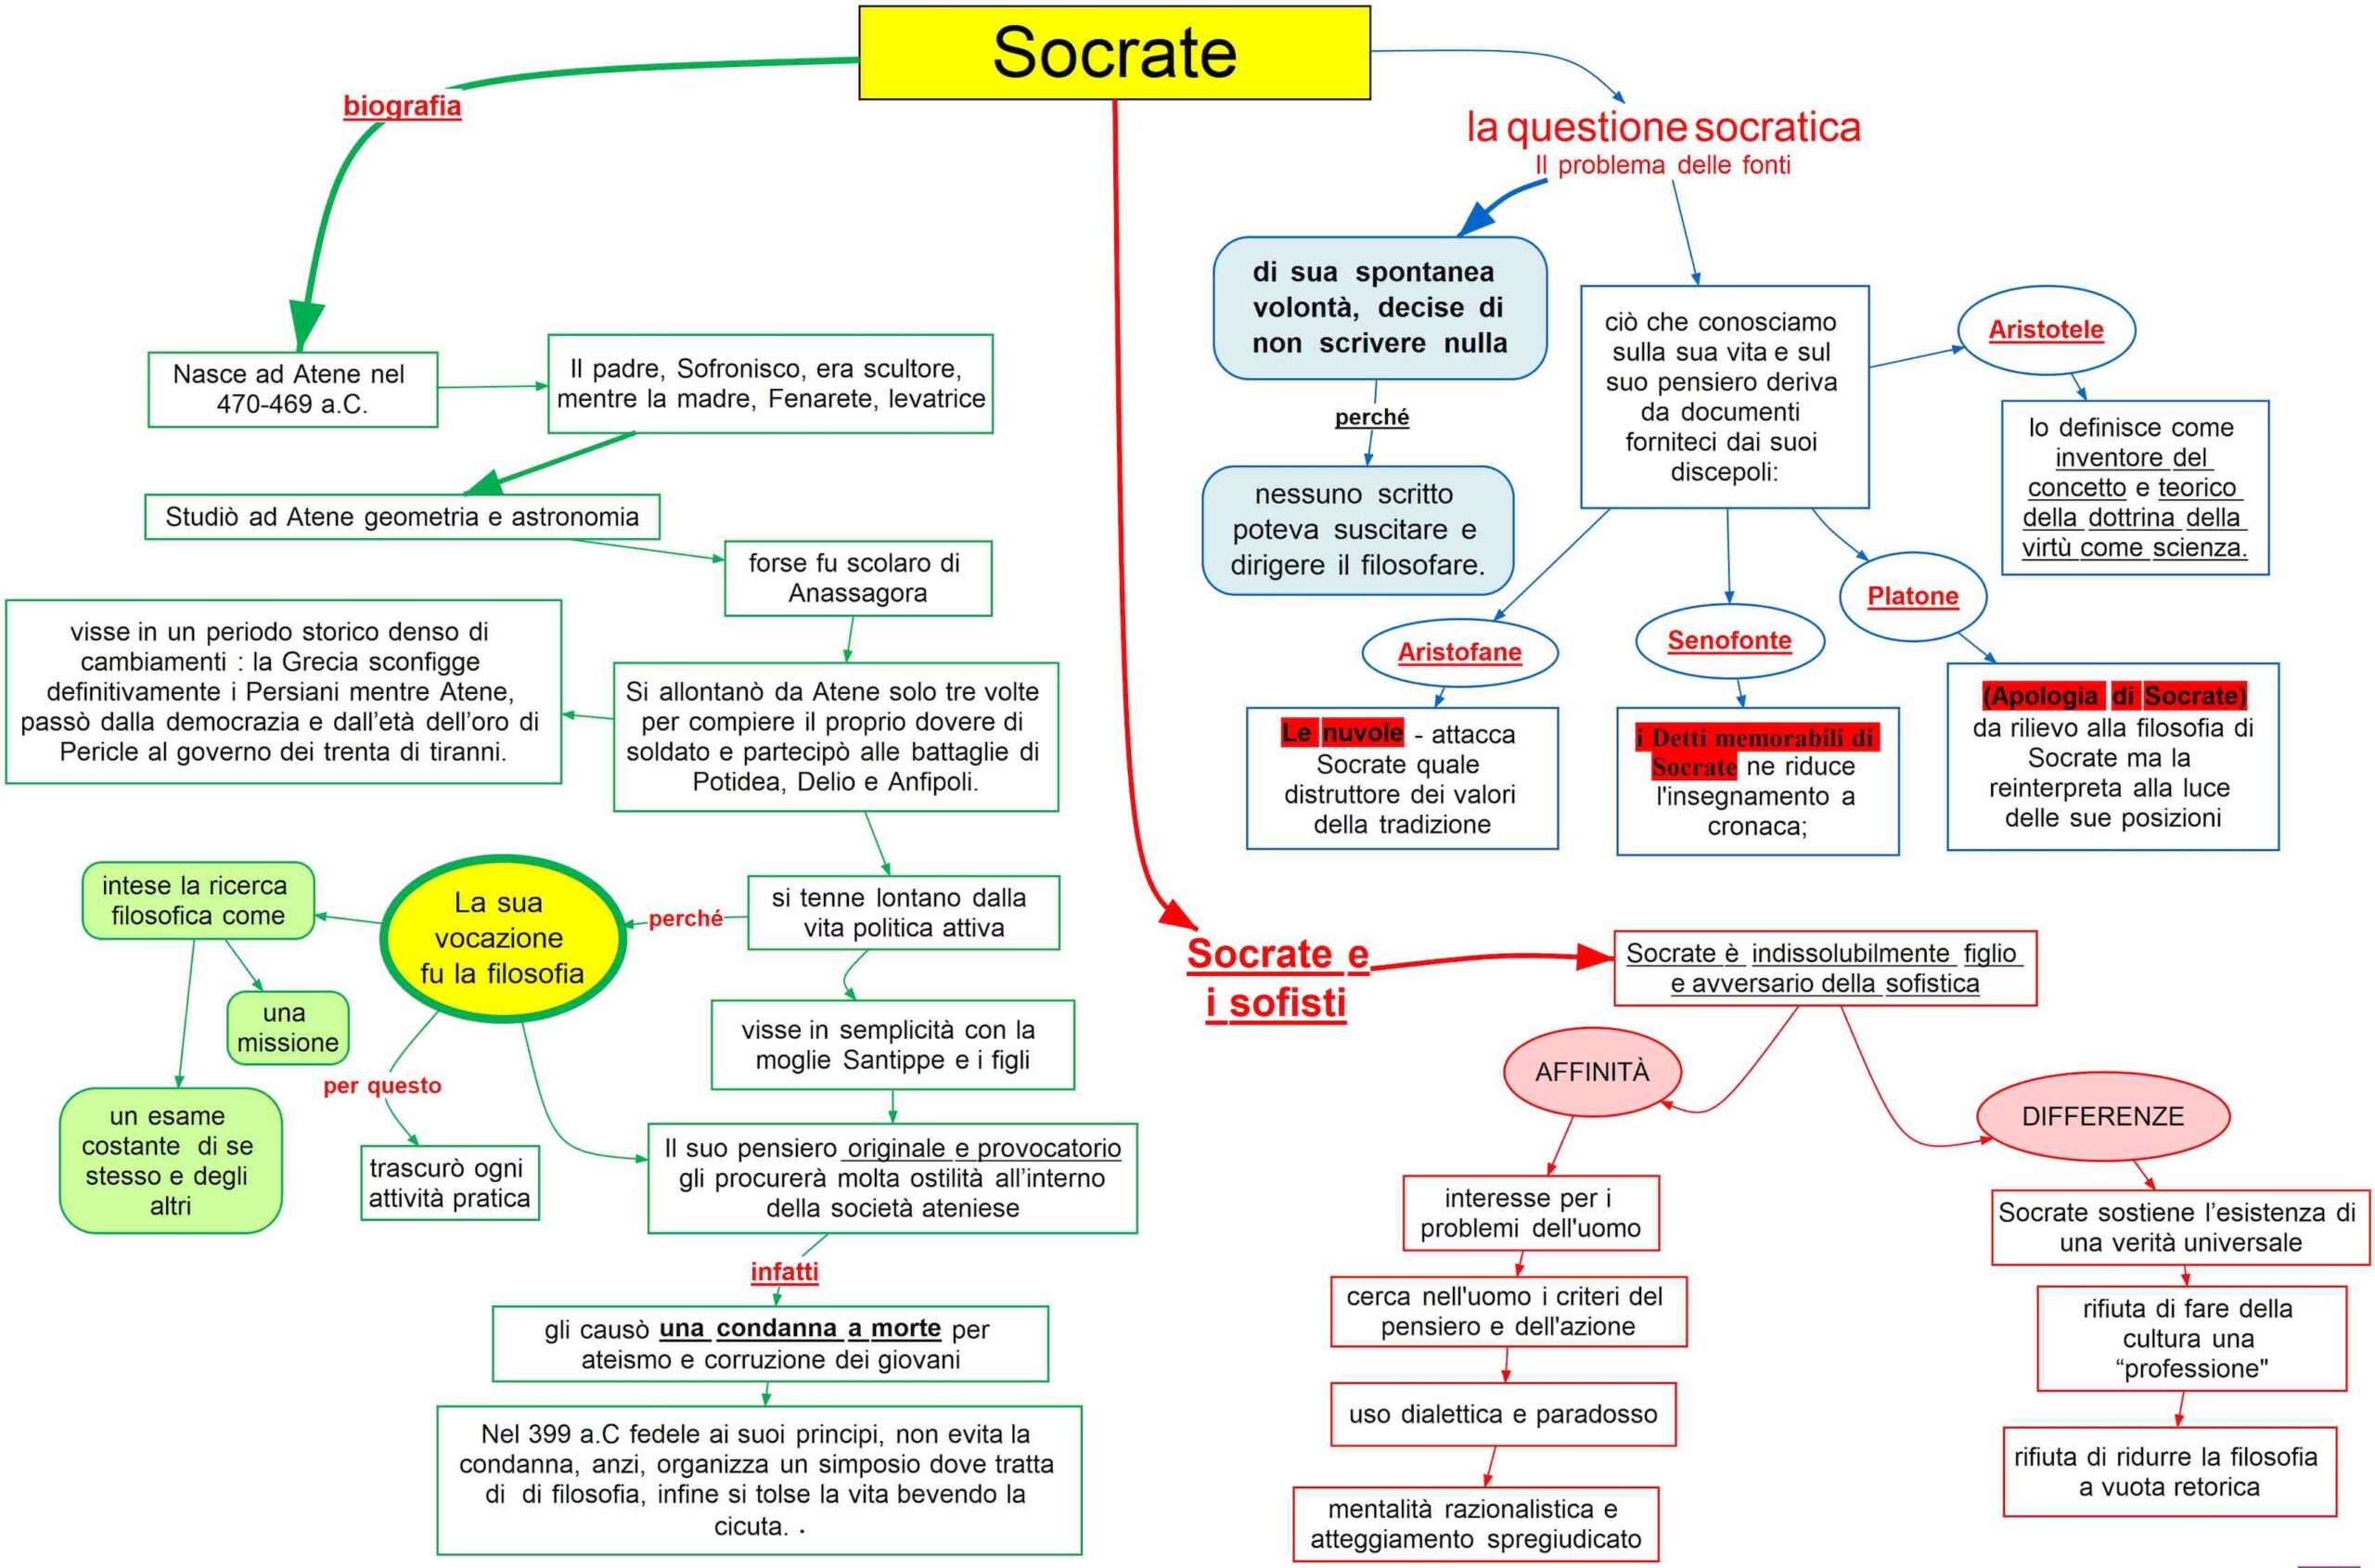 Socrate bio la questione socratica